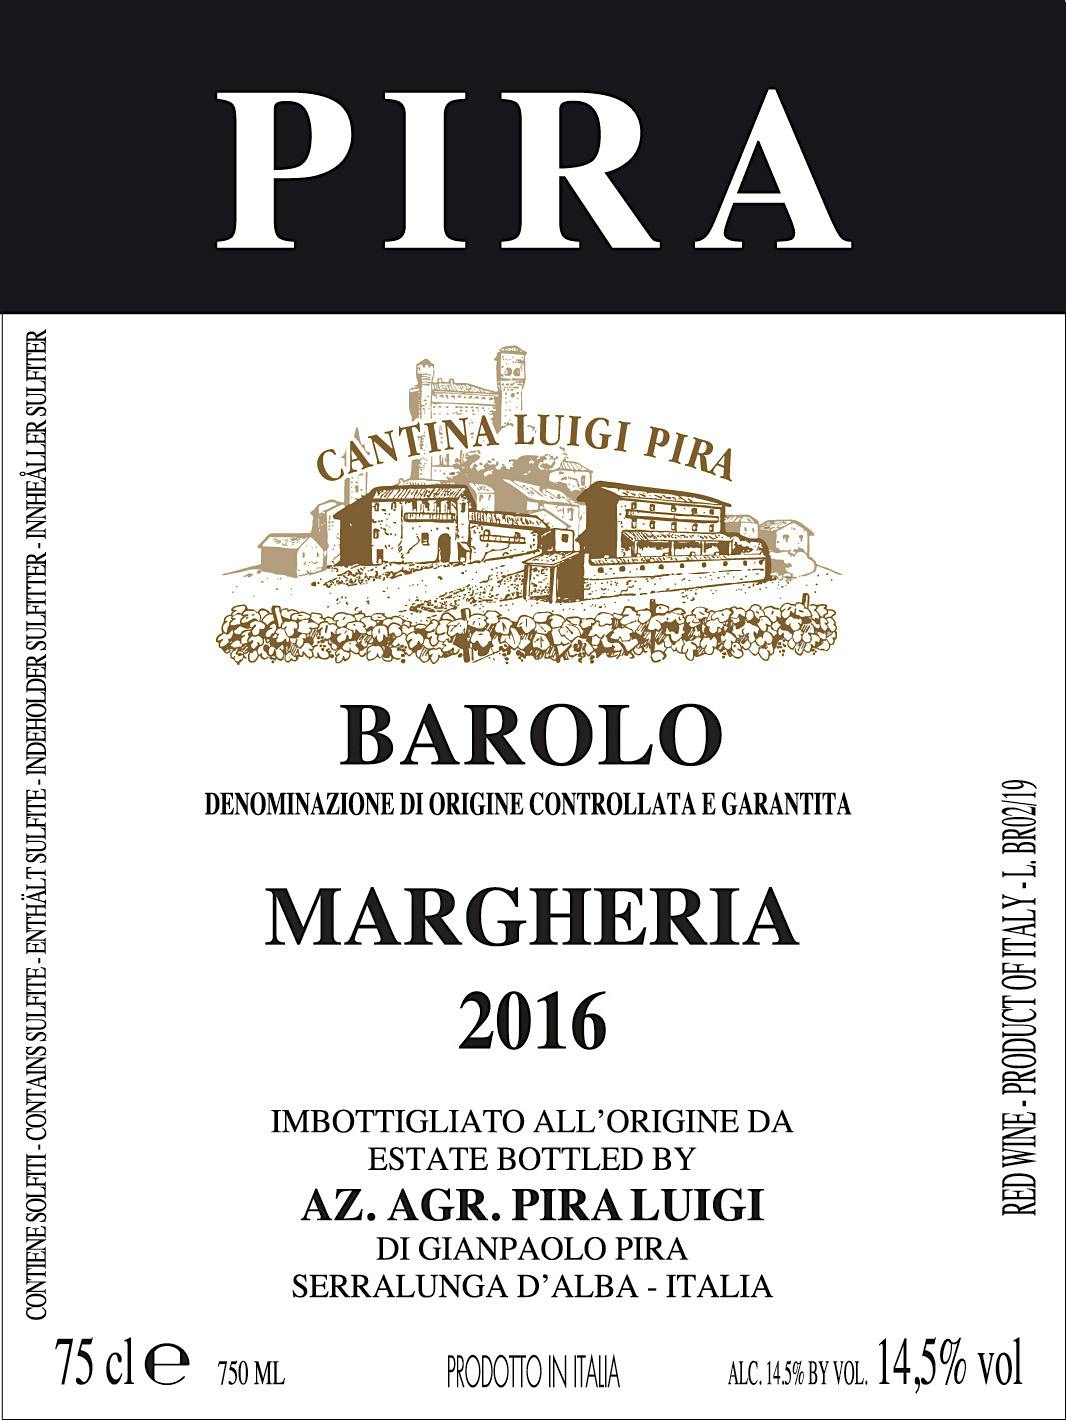 Label for Luigi Pira